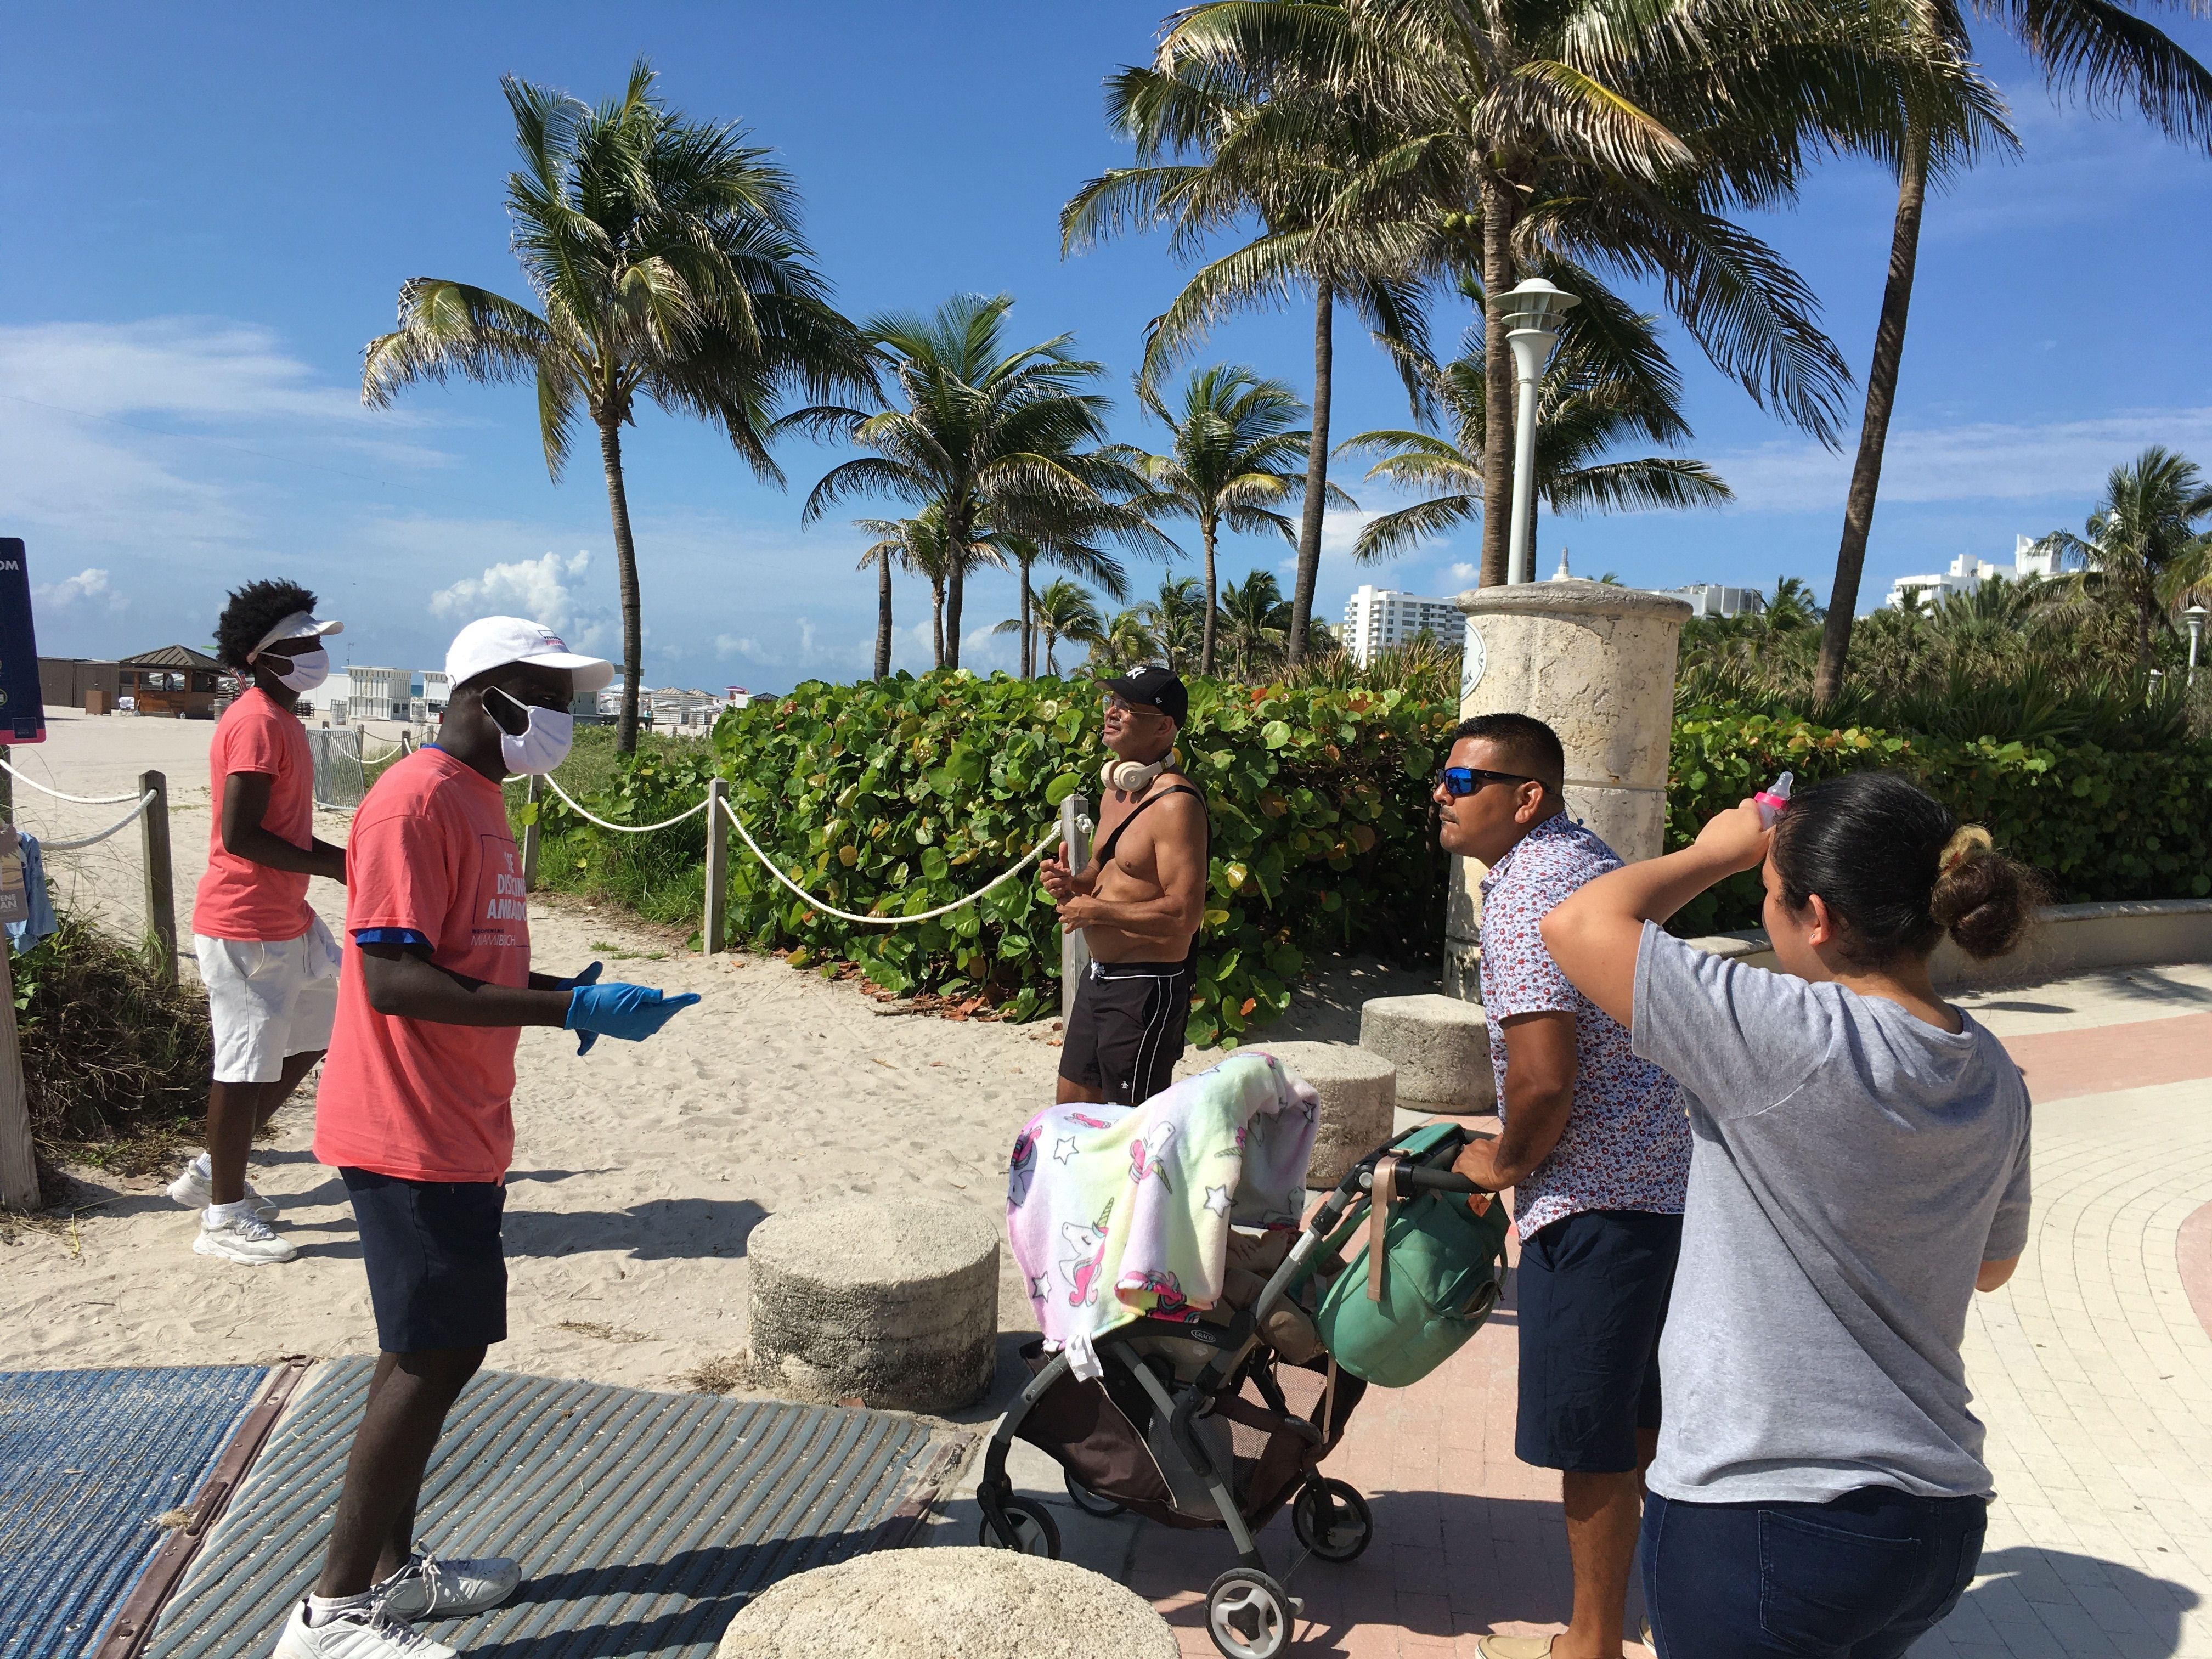 Unos jóvenes revisan las máscaras de unas personas a su llegada a la playa de Miami Beach, Florida, el 10 de junio de 2020. (Foto Prensa Libre: EFE).